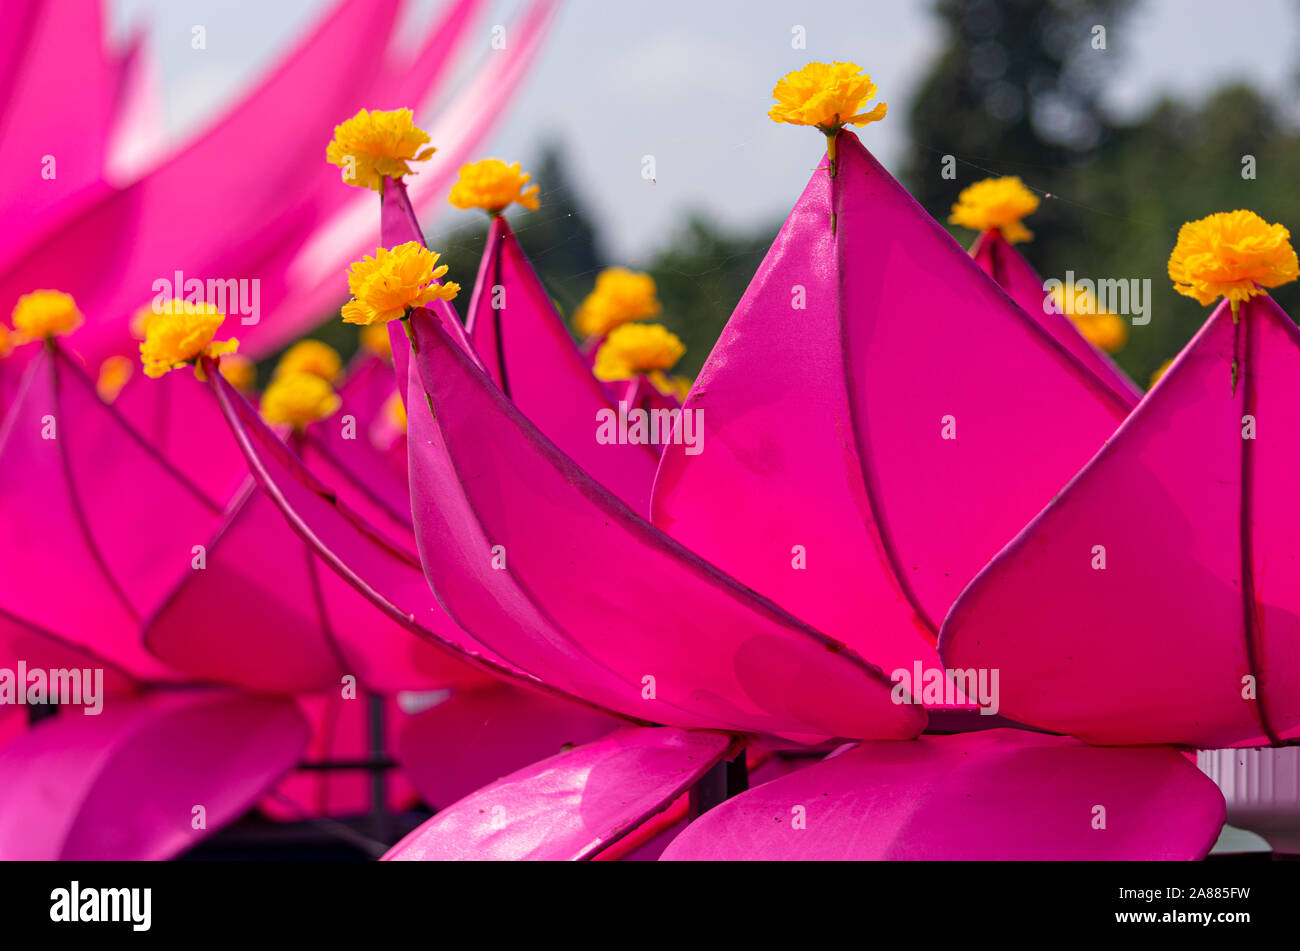 Bild von einem Stoff Lotus Blume auf die Blütenblätter mit gelben Blumen für Loi Krathong Festival - ausgewählte Schwerpunkte eingerichtet Stockfoto